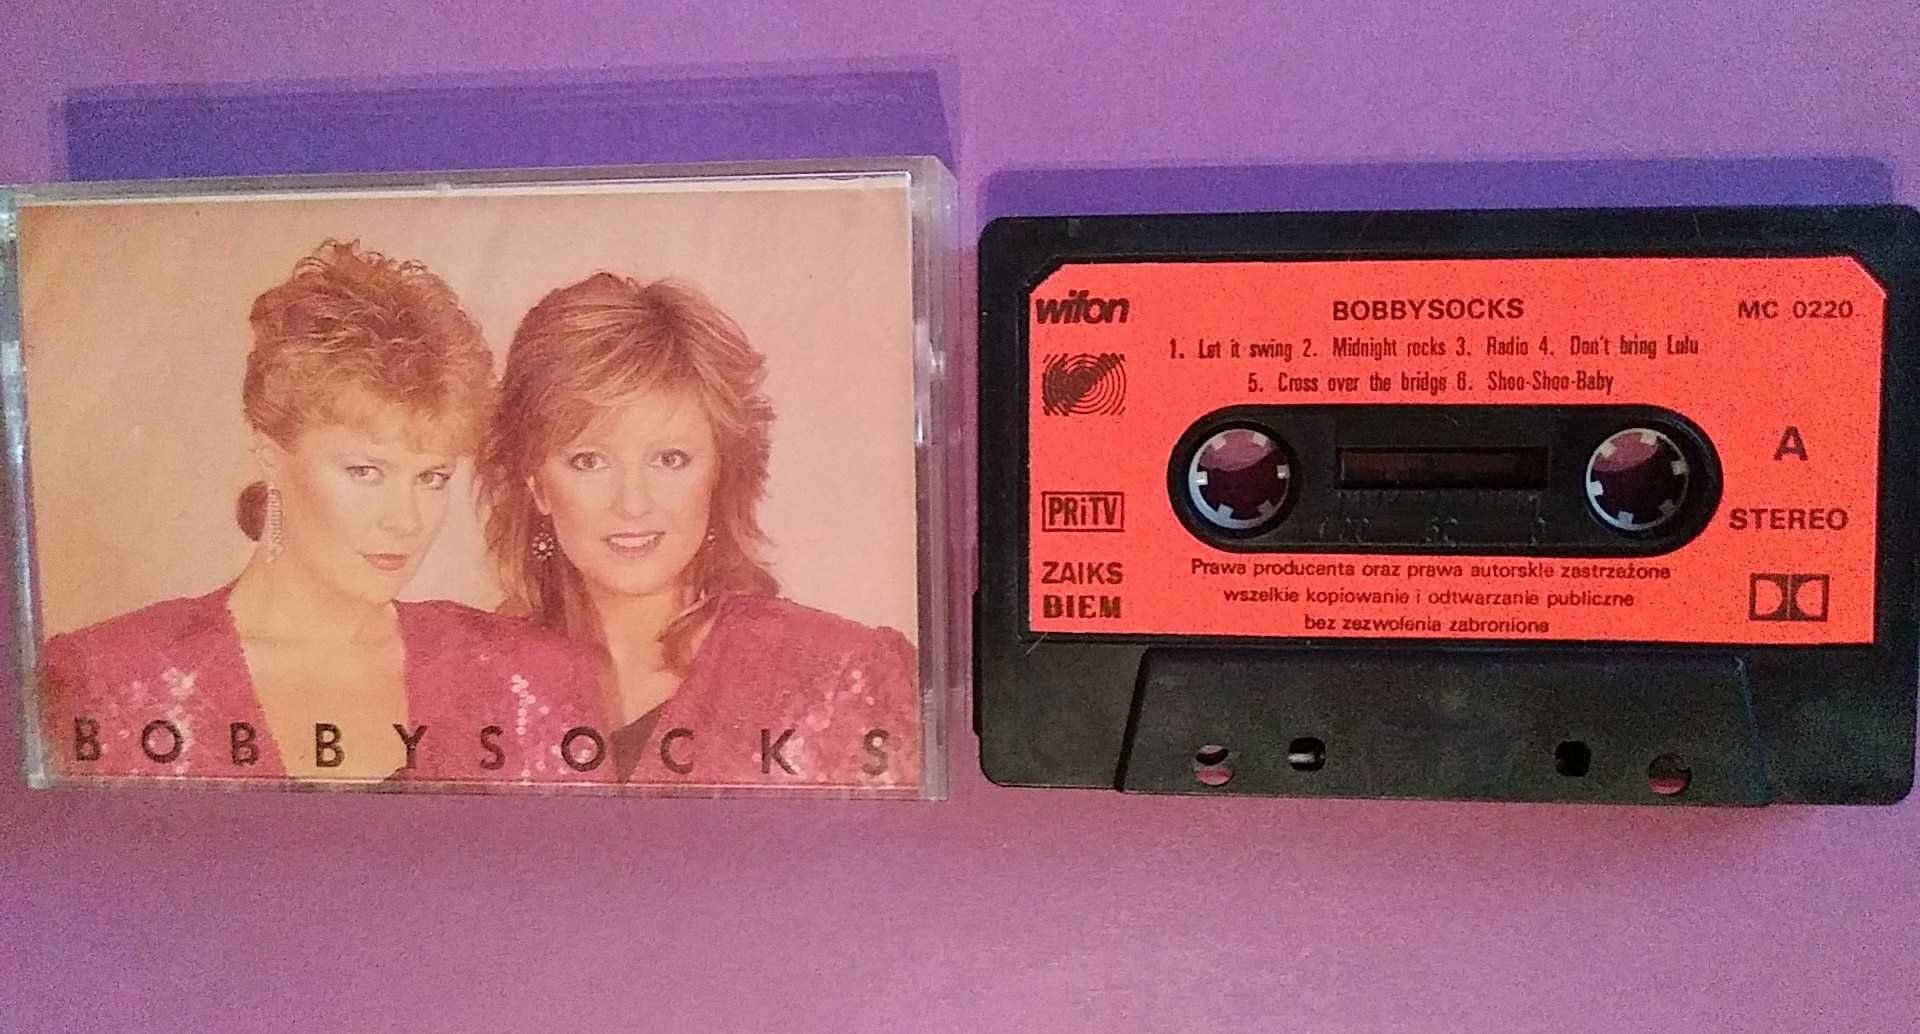 Bobbysocks – Bobbysocks , KASETA MAGNETOFONOWA Wifon 1986